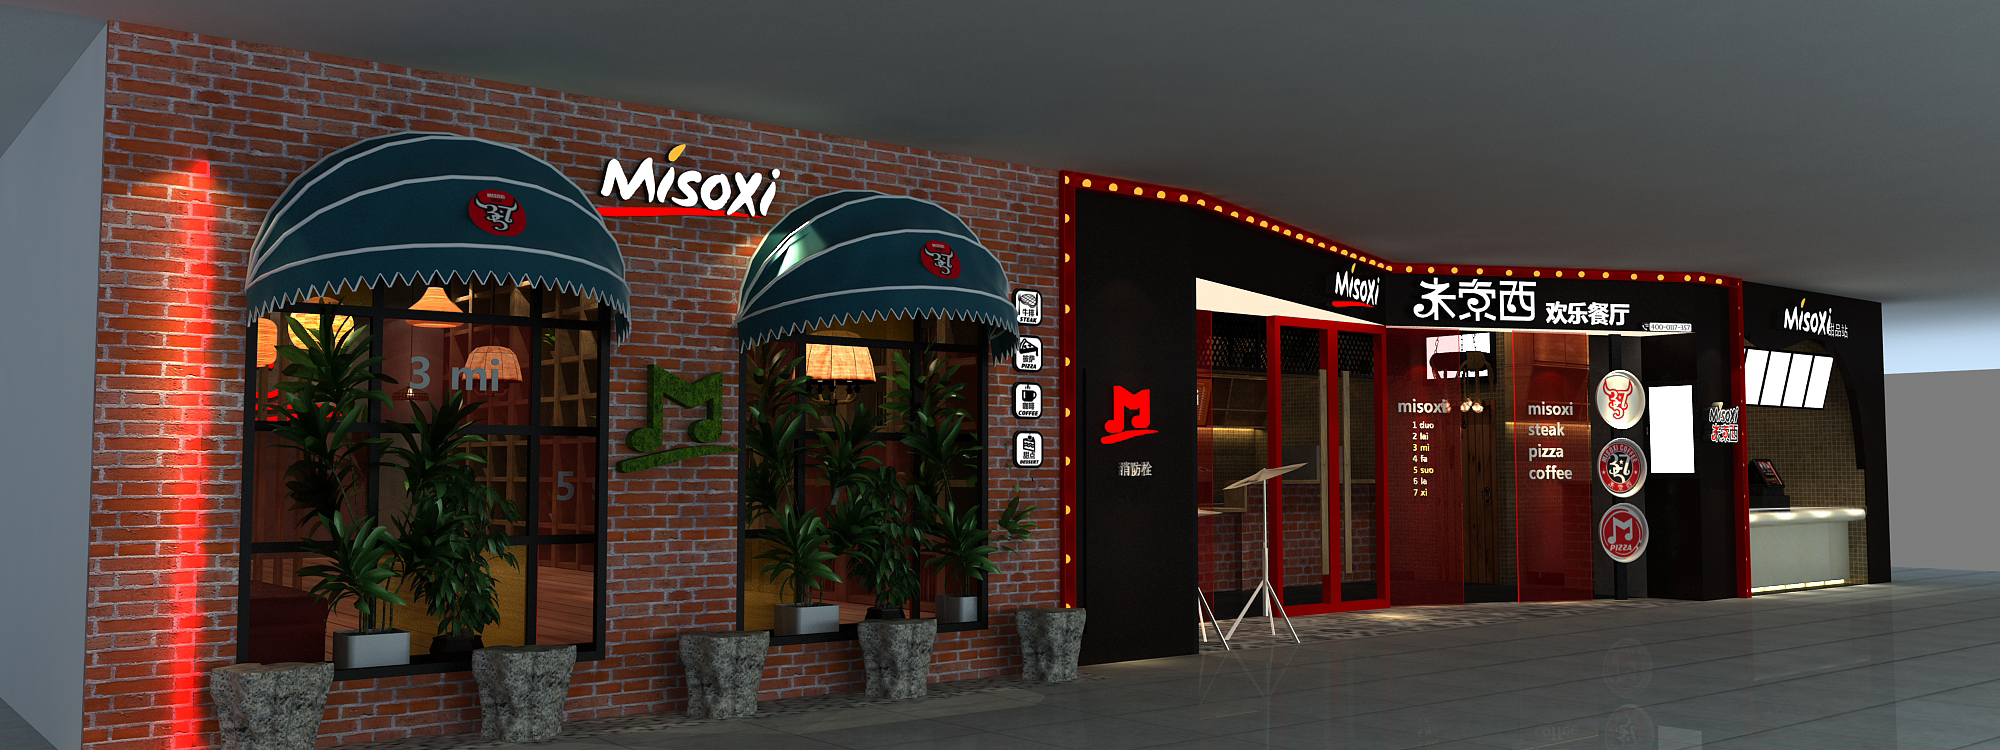 米索西牛排西餐厅(misoxi)